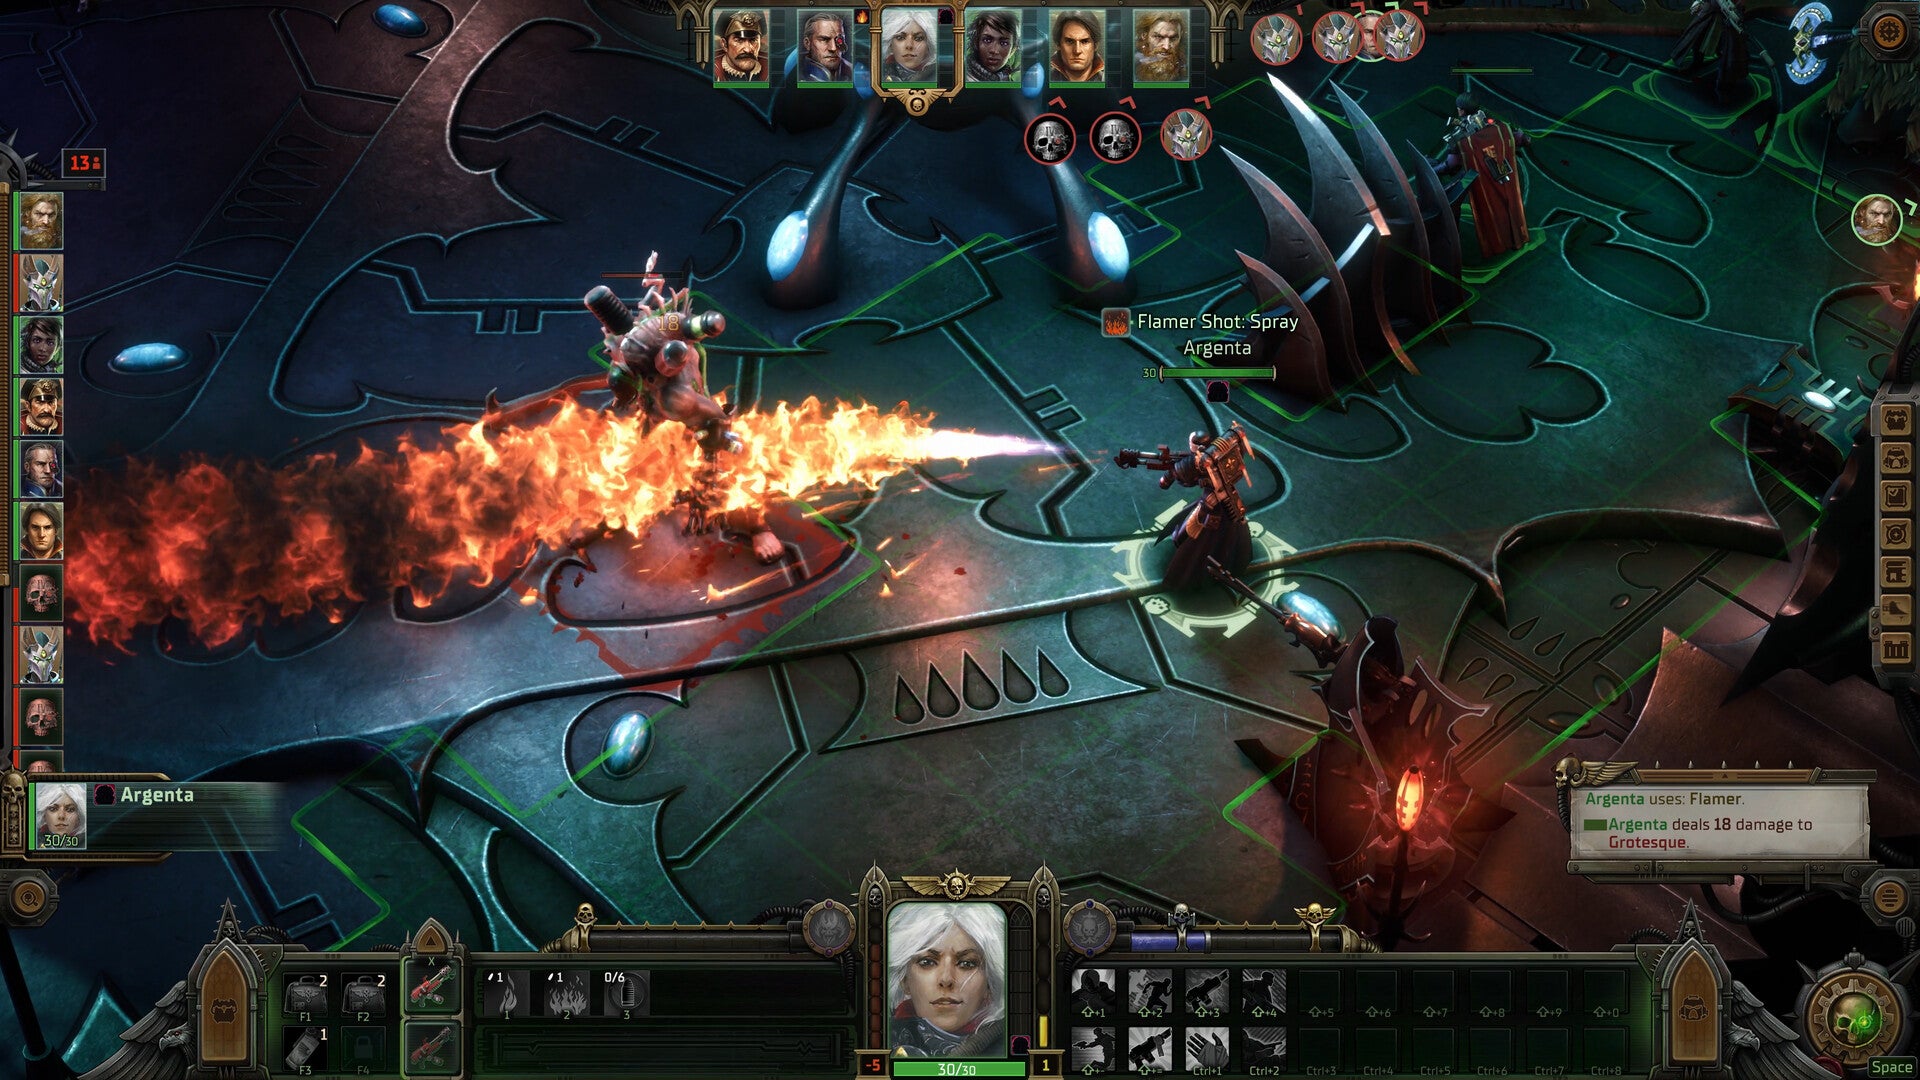 Скриншот из игры Warhammer 40,000: Rogue Trader, показывающий изометрическое видение тактической RPG сцены, где космический десантник поджигает врага.